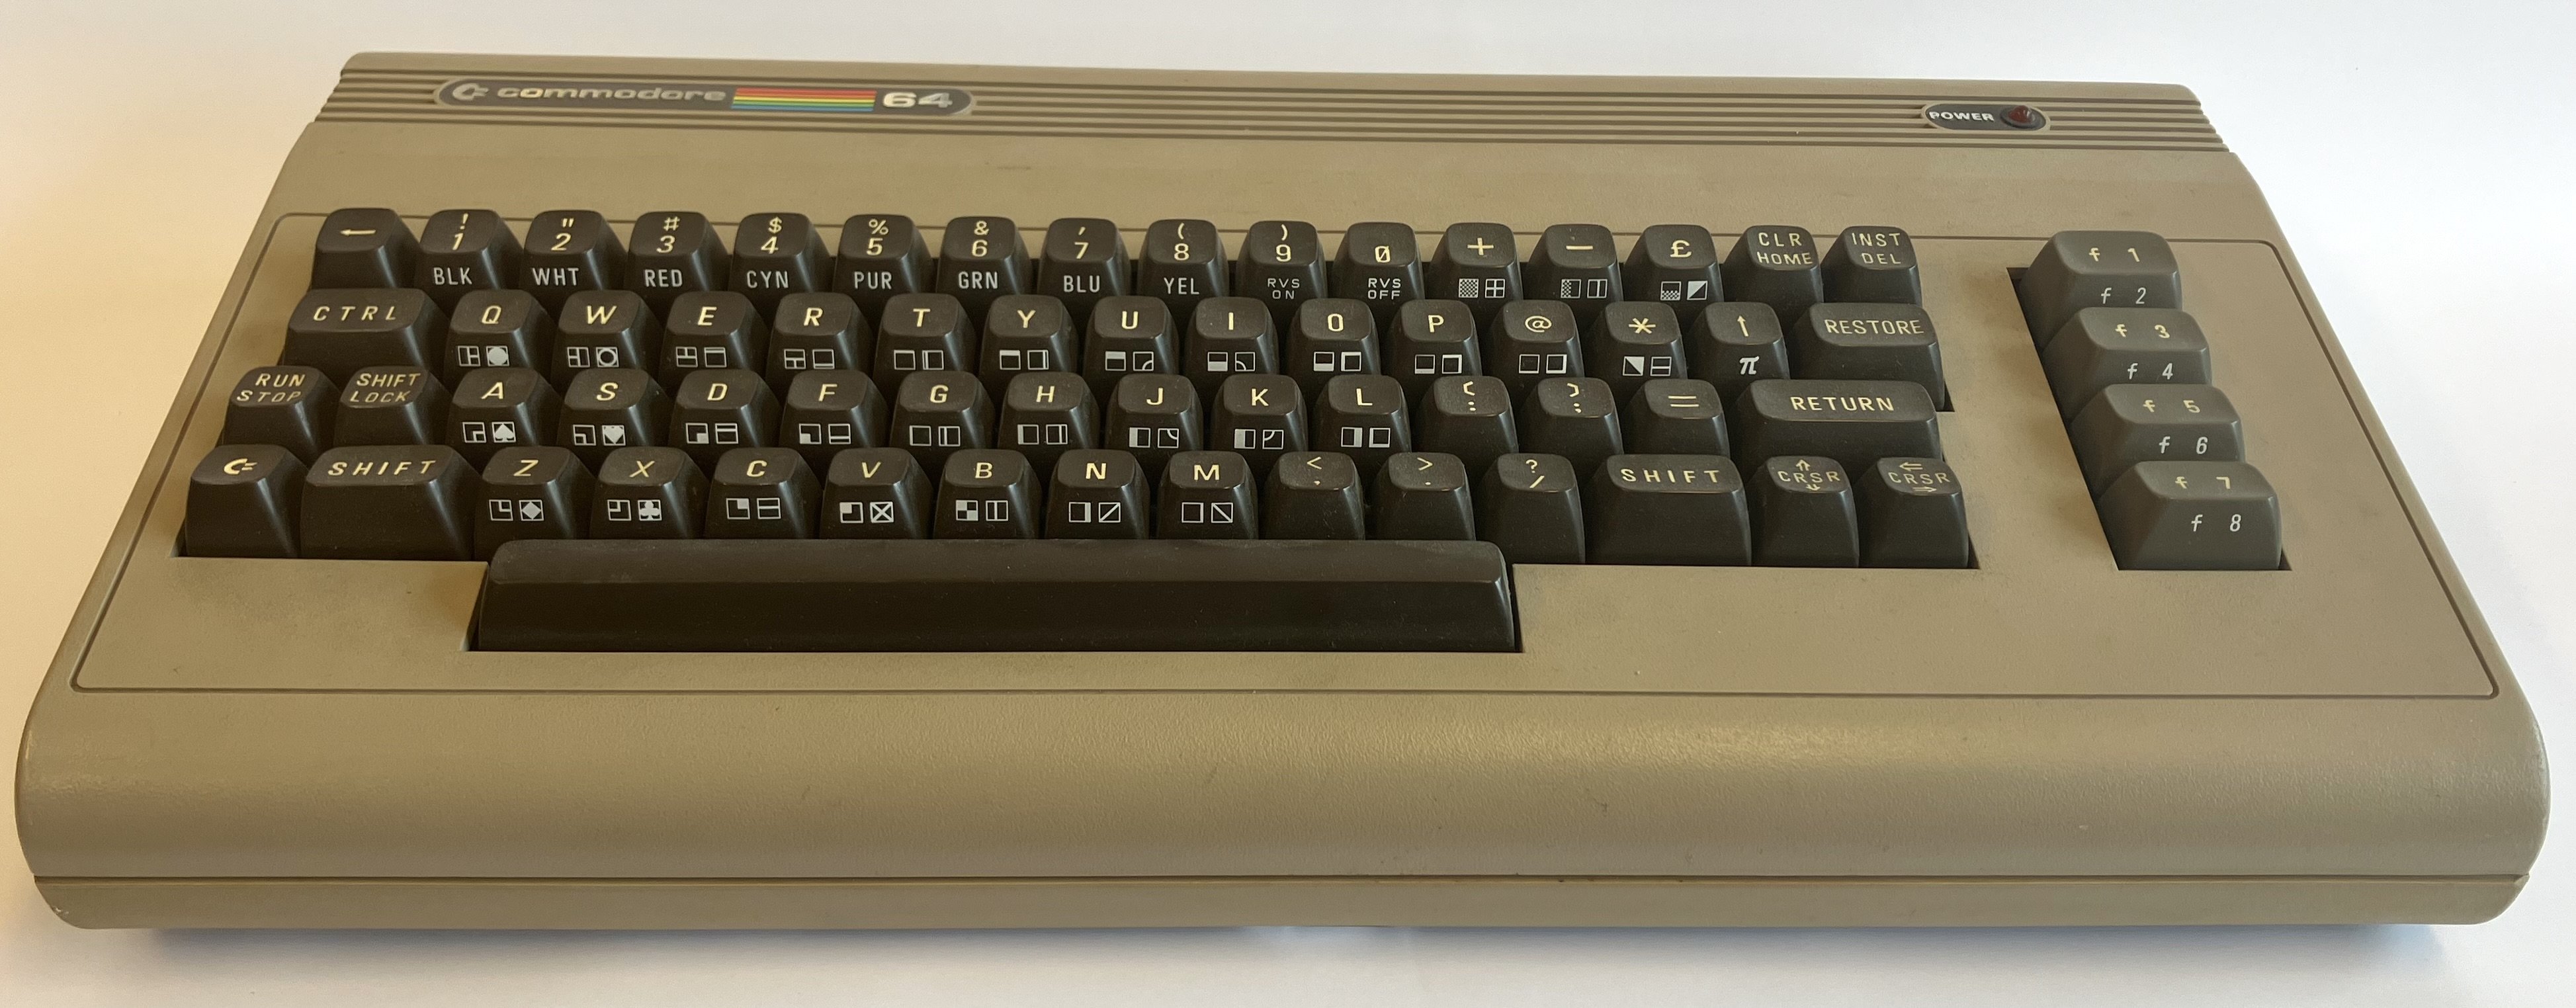 Commodore 64 (Computerhistorische Sammlung des Zuse-Institut Berlin CC0)